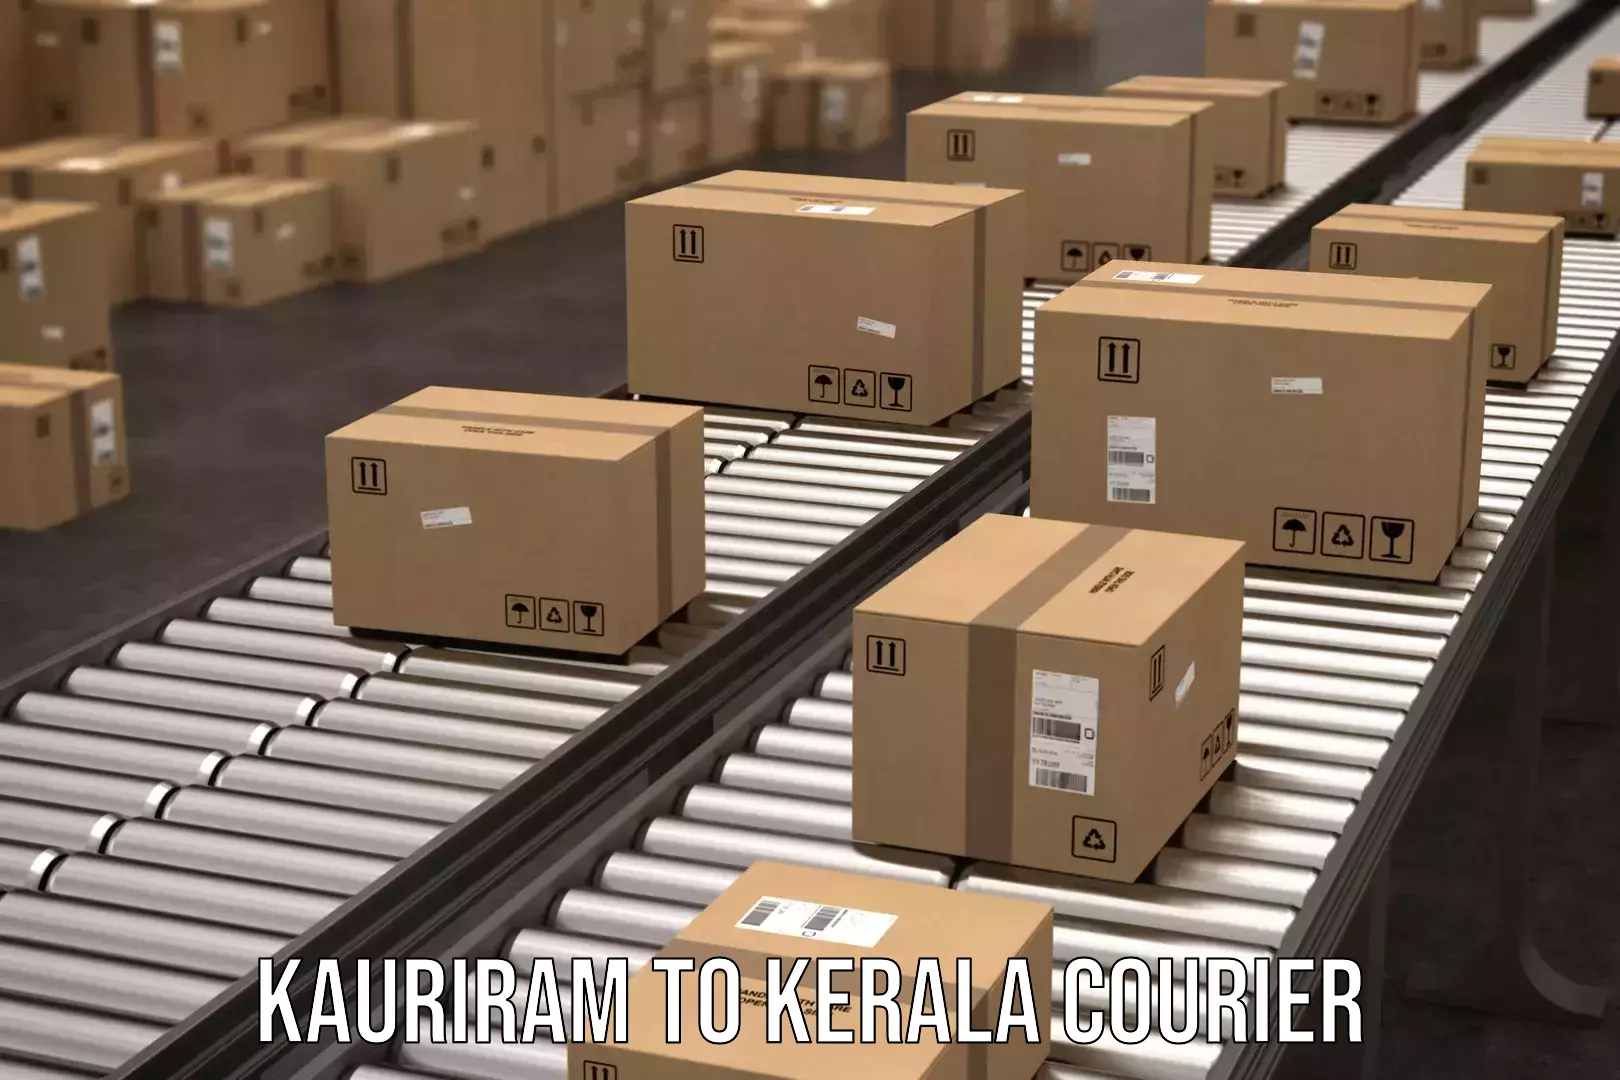 Full-service courier options Kauriram to Thiruvananthapuram